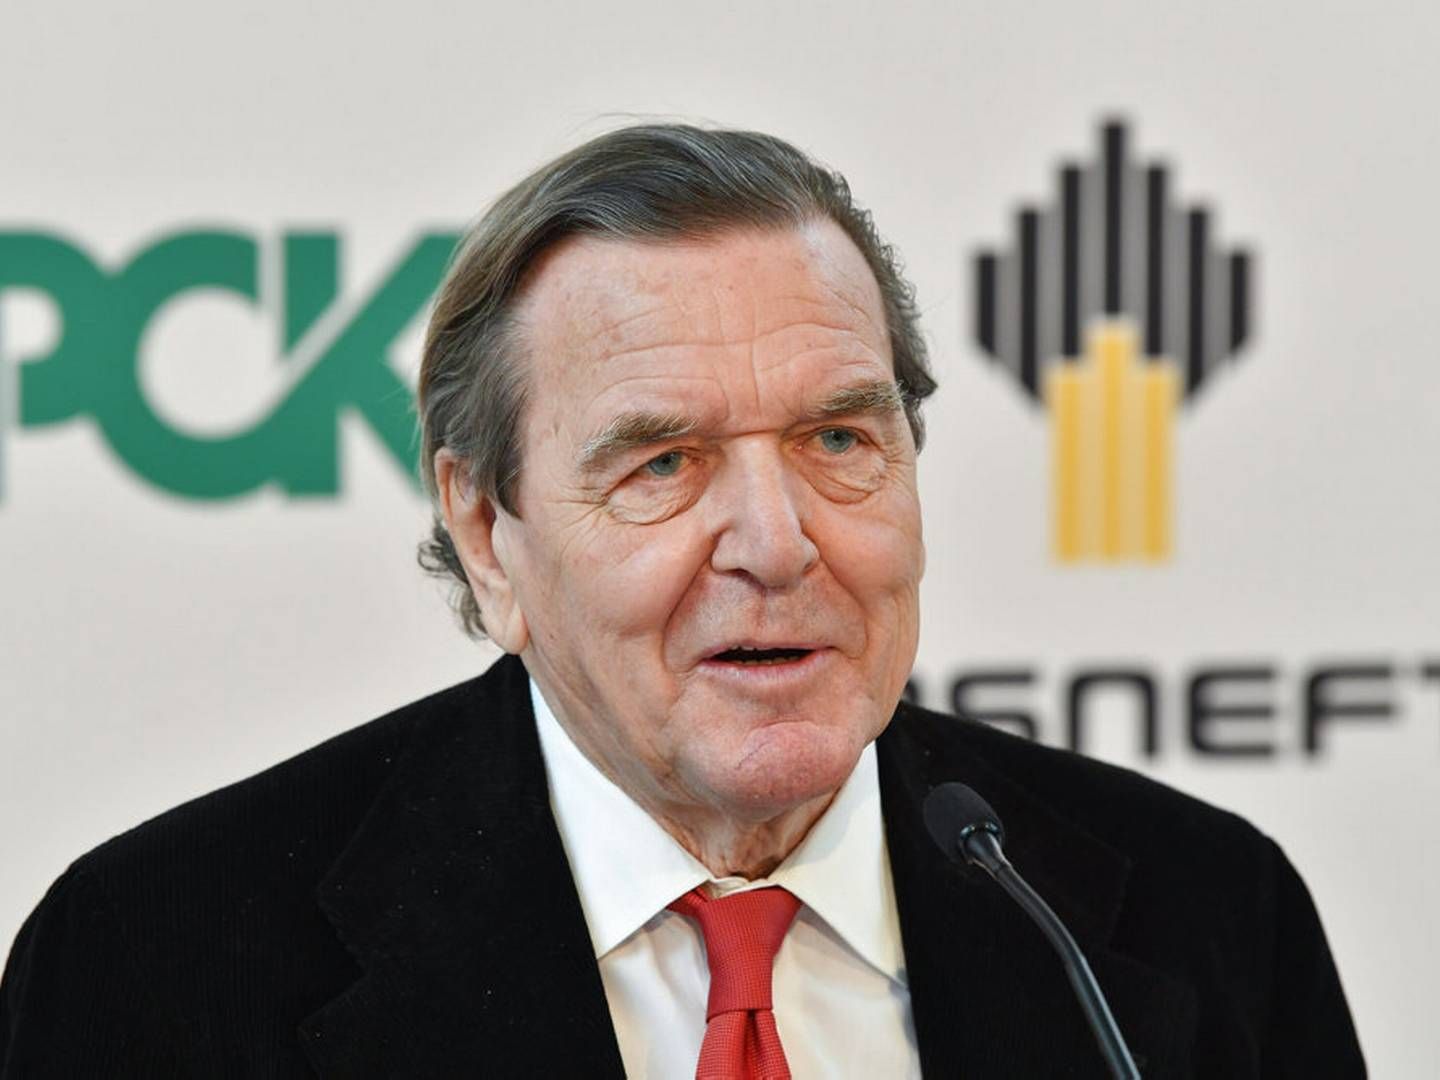 Tysklands tidligere forbundskansler Gerhard Schröder havde i årevis en plads i bestyrelsen i det store russiske energiselskab Rosneft. Nu foreslår Tyskland, at det skal forbydes EU-borgere at have nøglejob i statslige russiske virksomheder. Arkivfoto: Patrick Pleul/Ritzau Scanpix